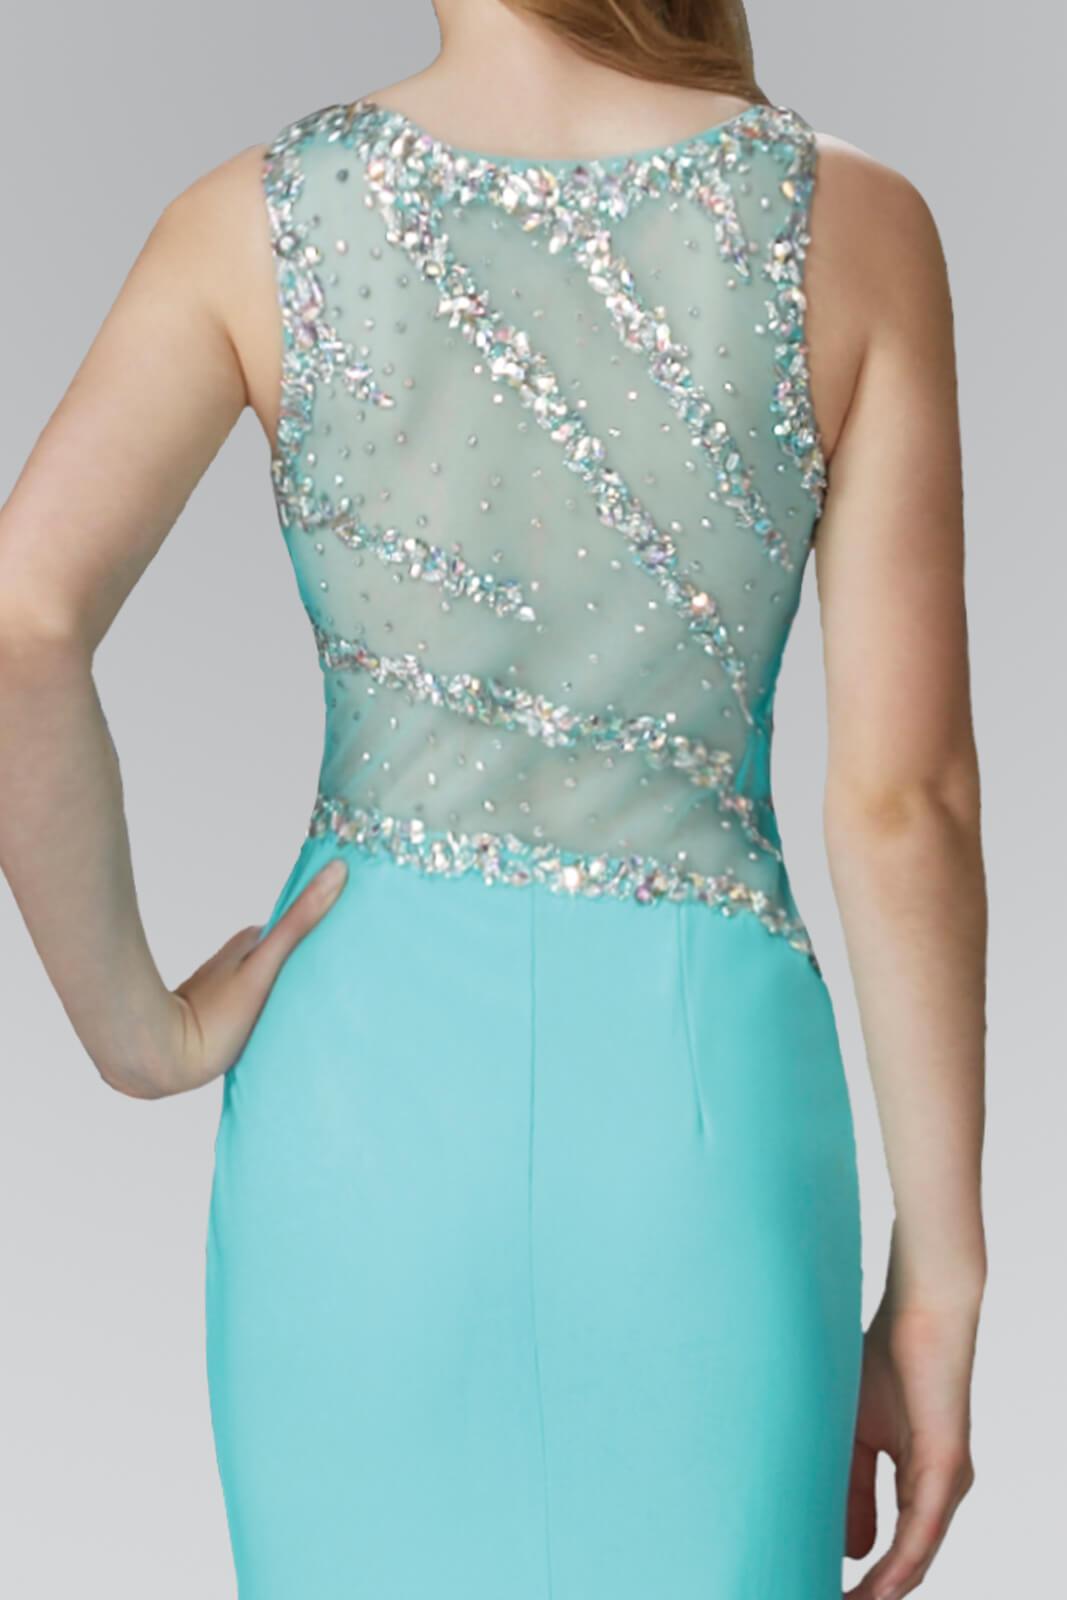 Prom Long Sleeveless Formal Dress with Side Slit - The Dress Outlet Elizabeth K